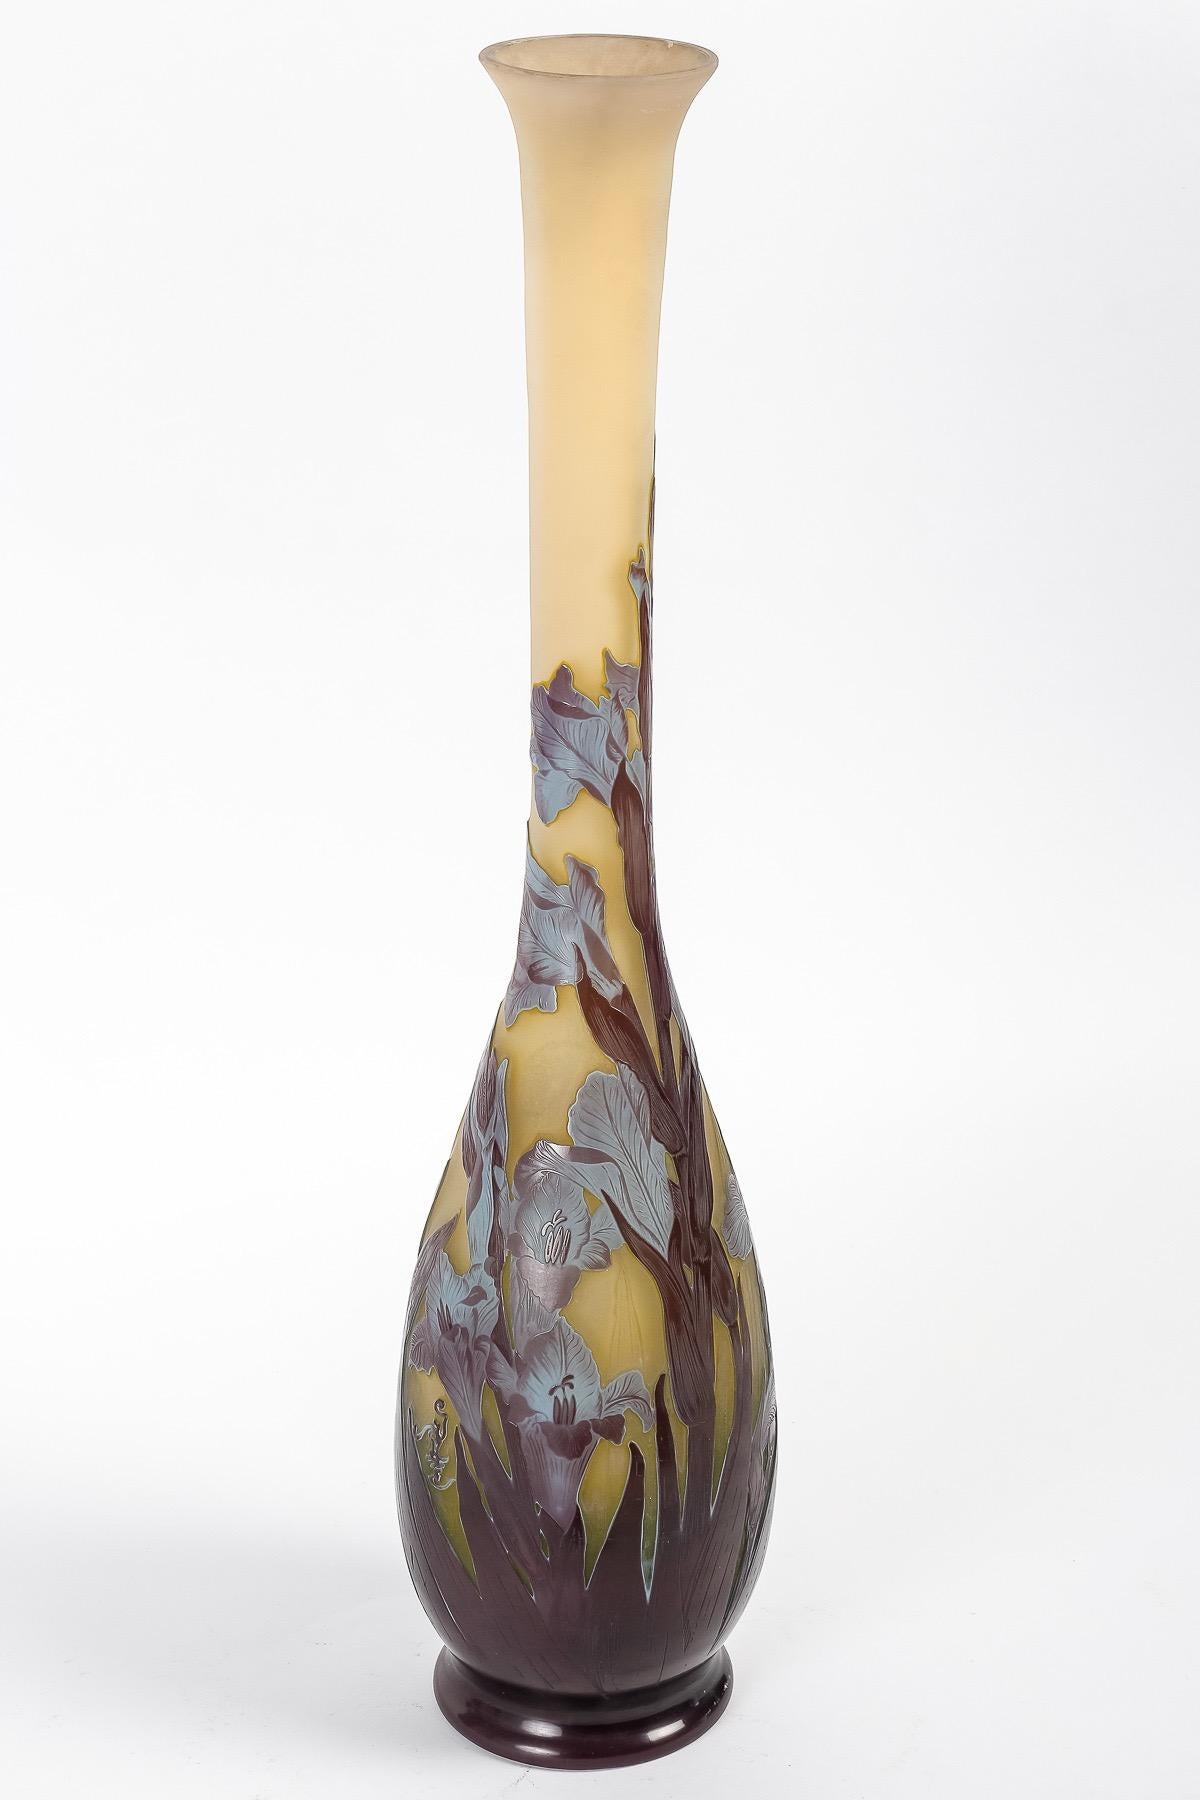 Art nouveau Émile Gallé (1846-1904), Grand vase en verre camée 